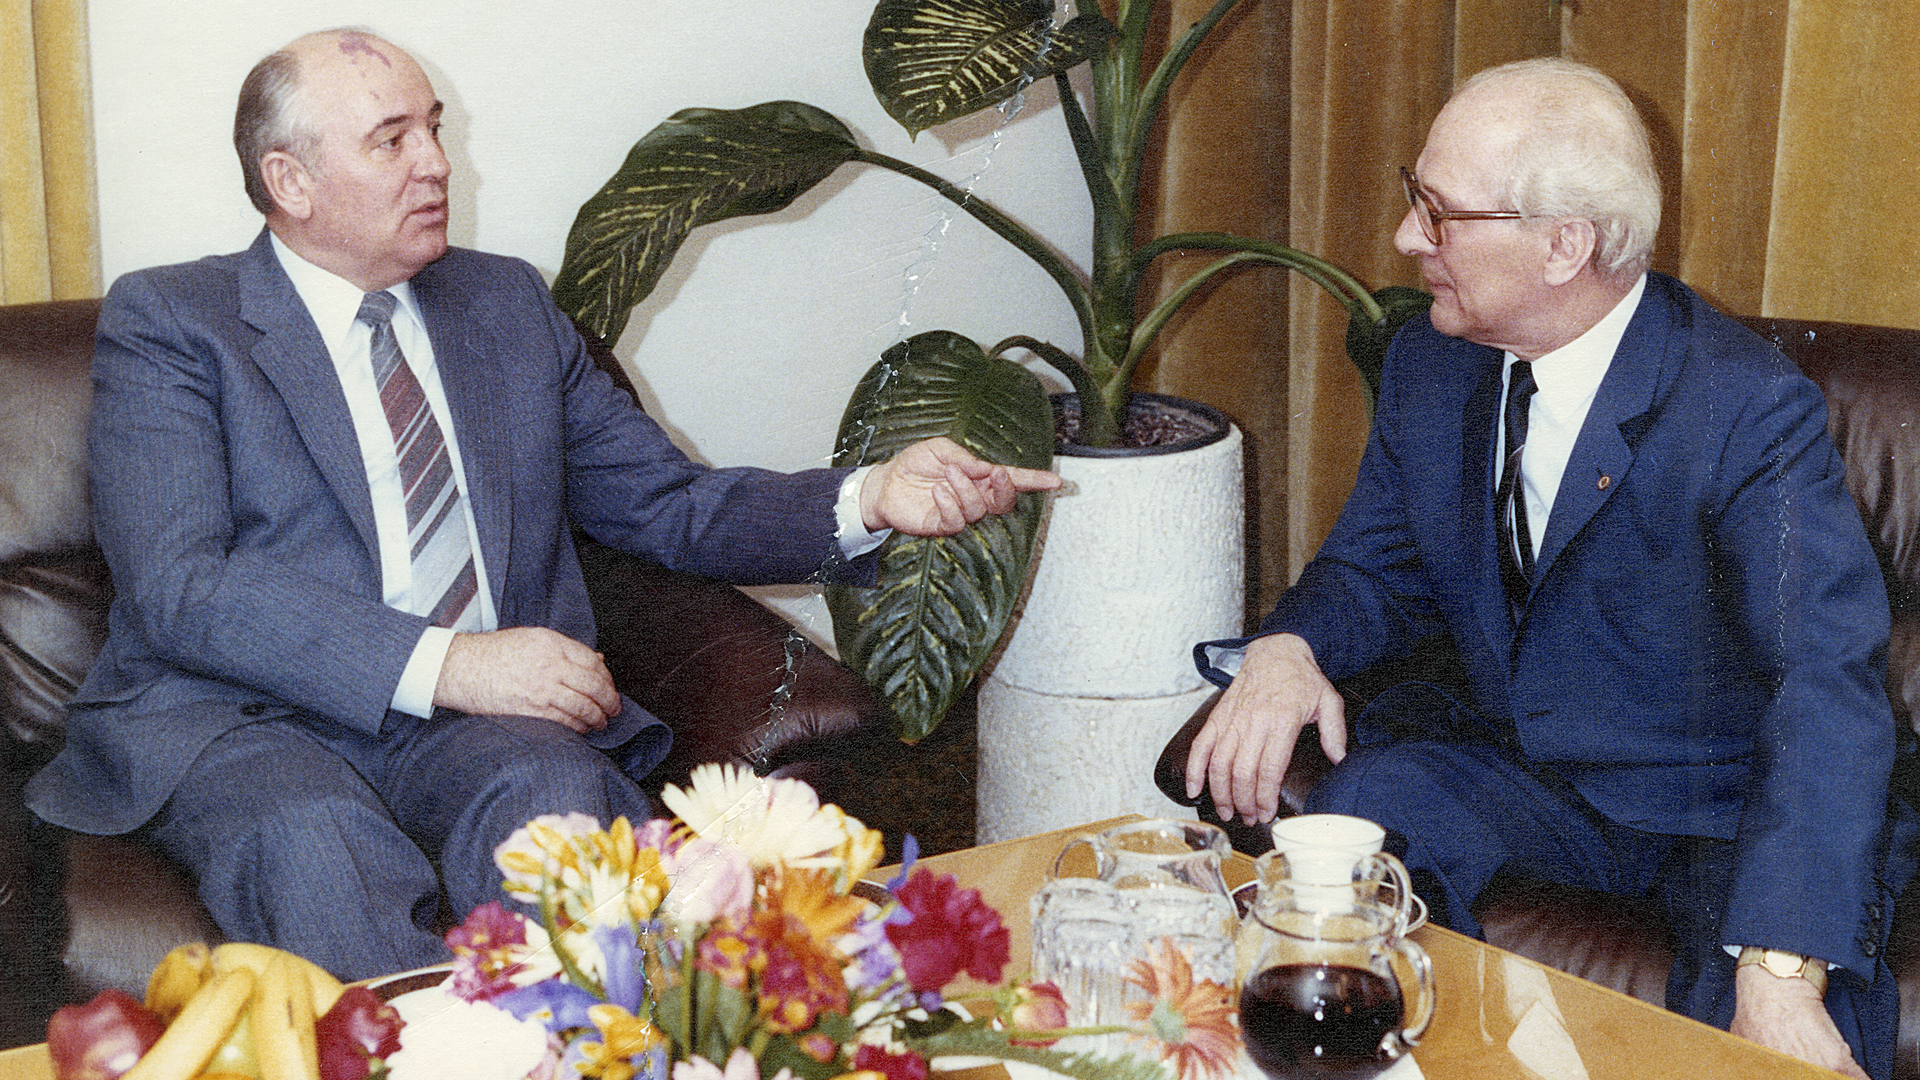 Das Bild zeigt Michail Gorbatschow und Erich Honecker im Gespräch.